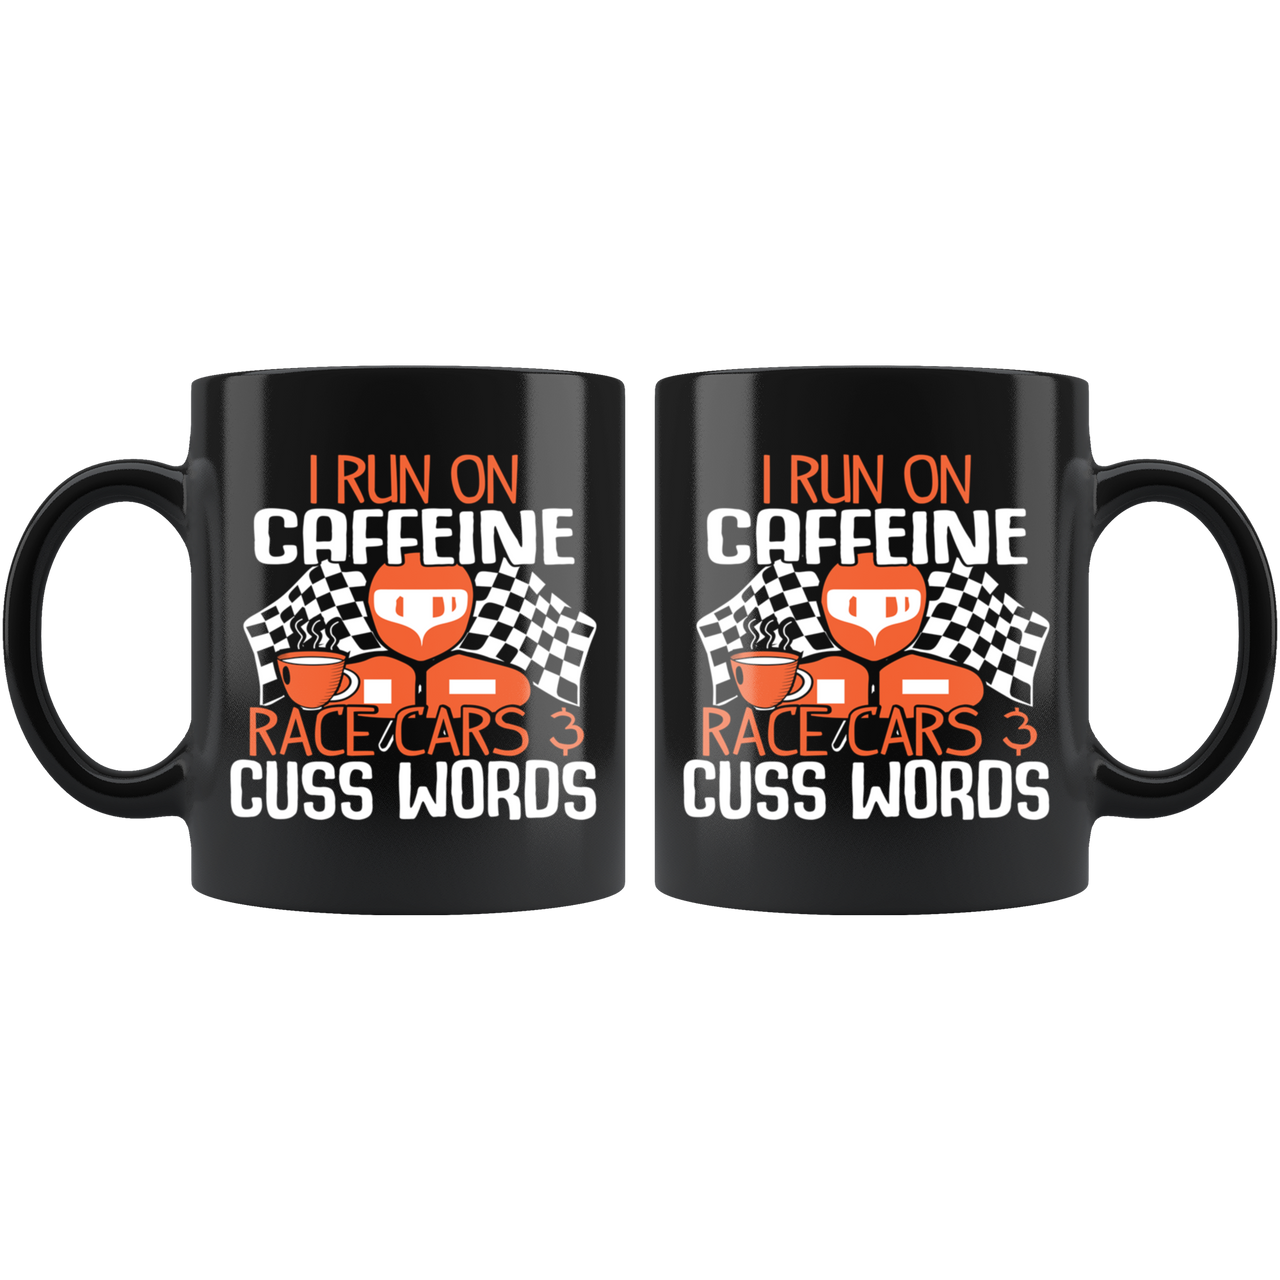 I Run On Caffeine Race Cars And Cuss Words Mug!